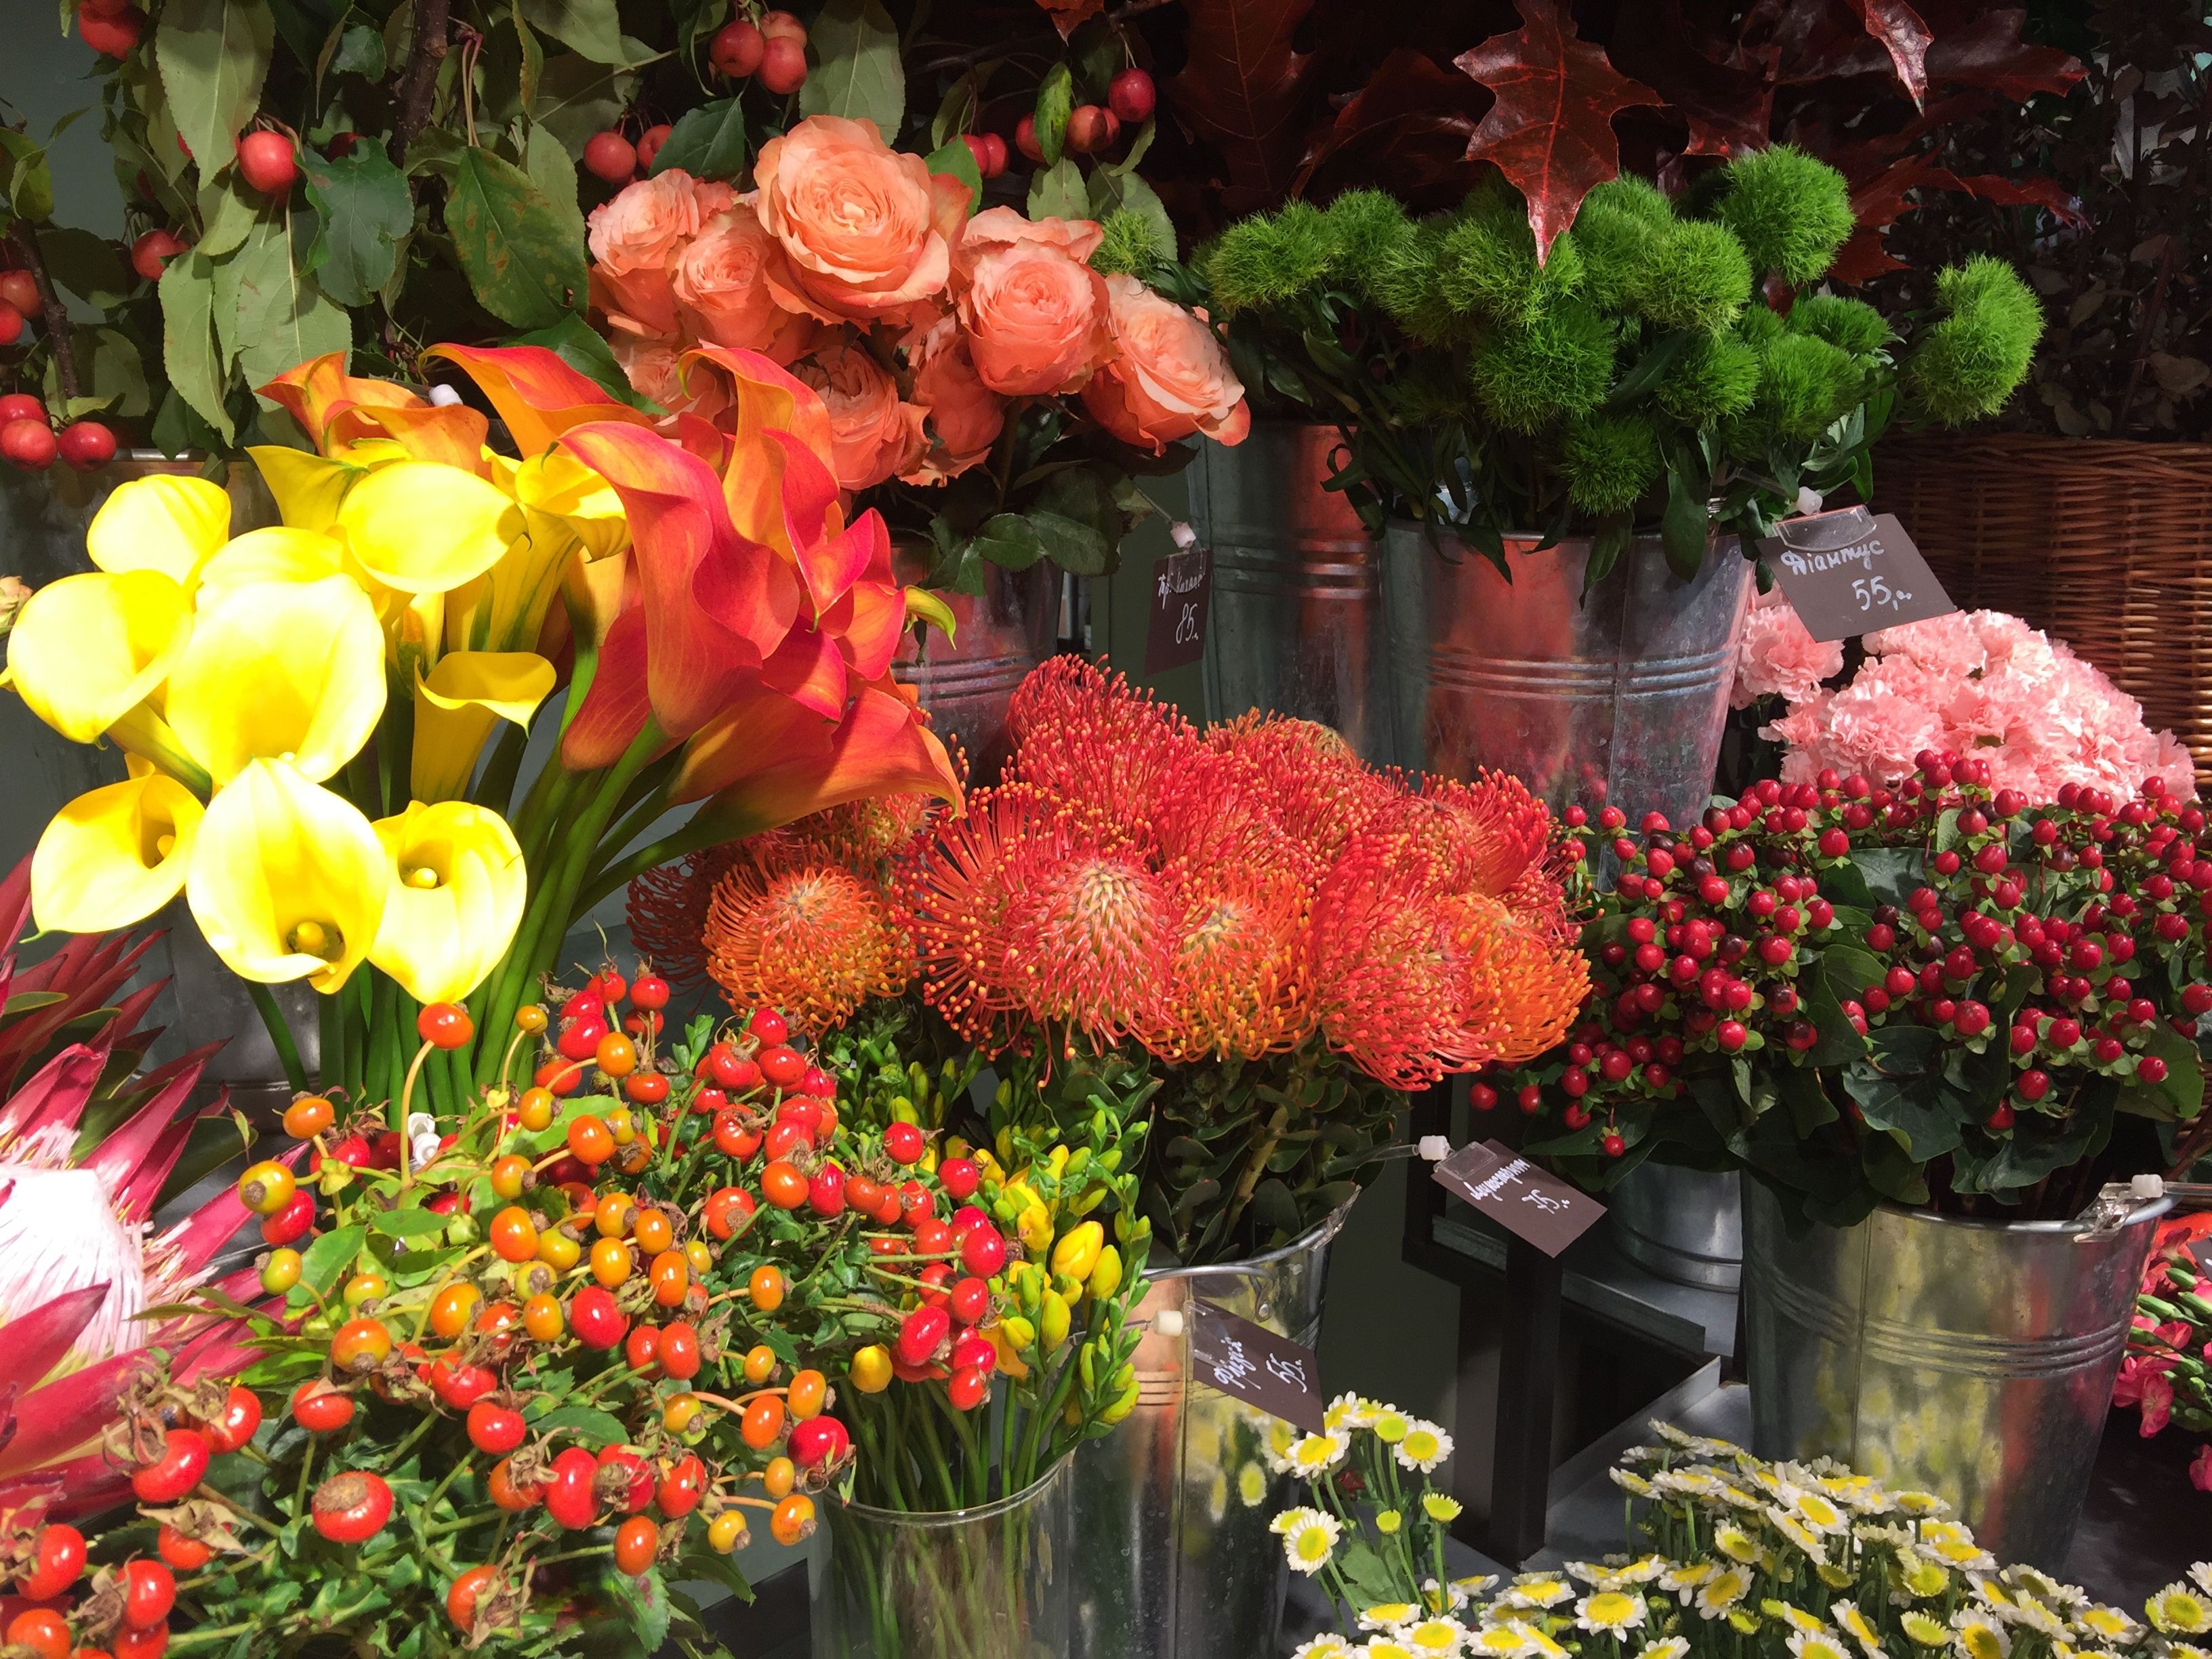 10 Design Principles for Flower Arranging